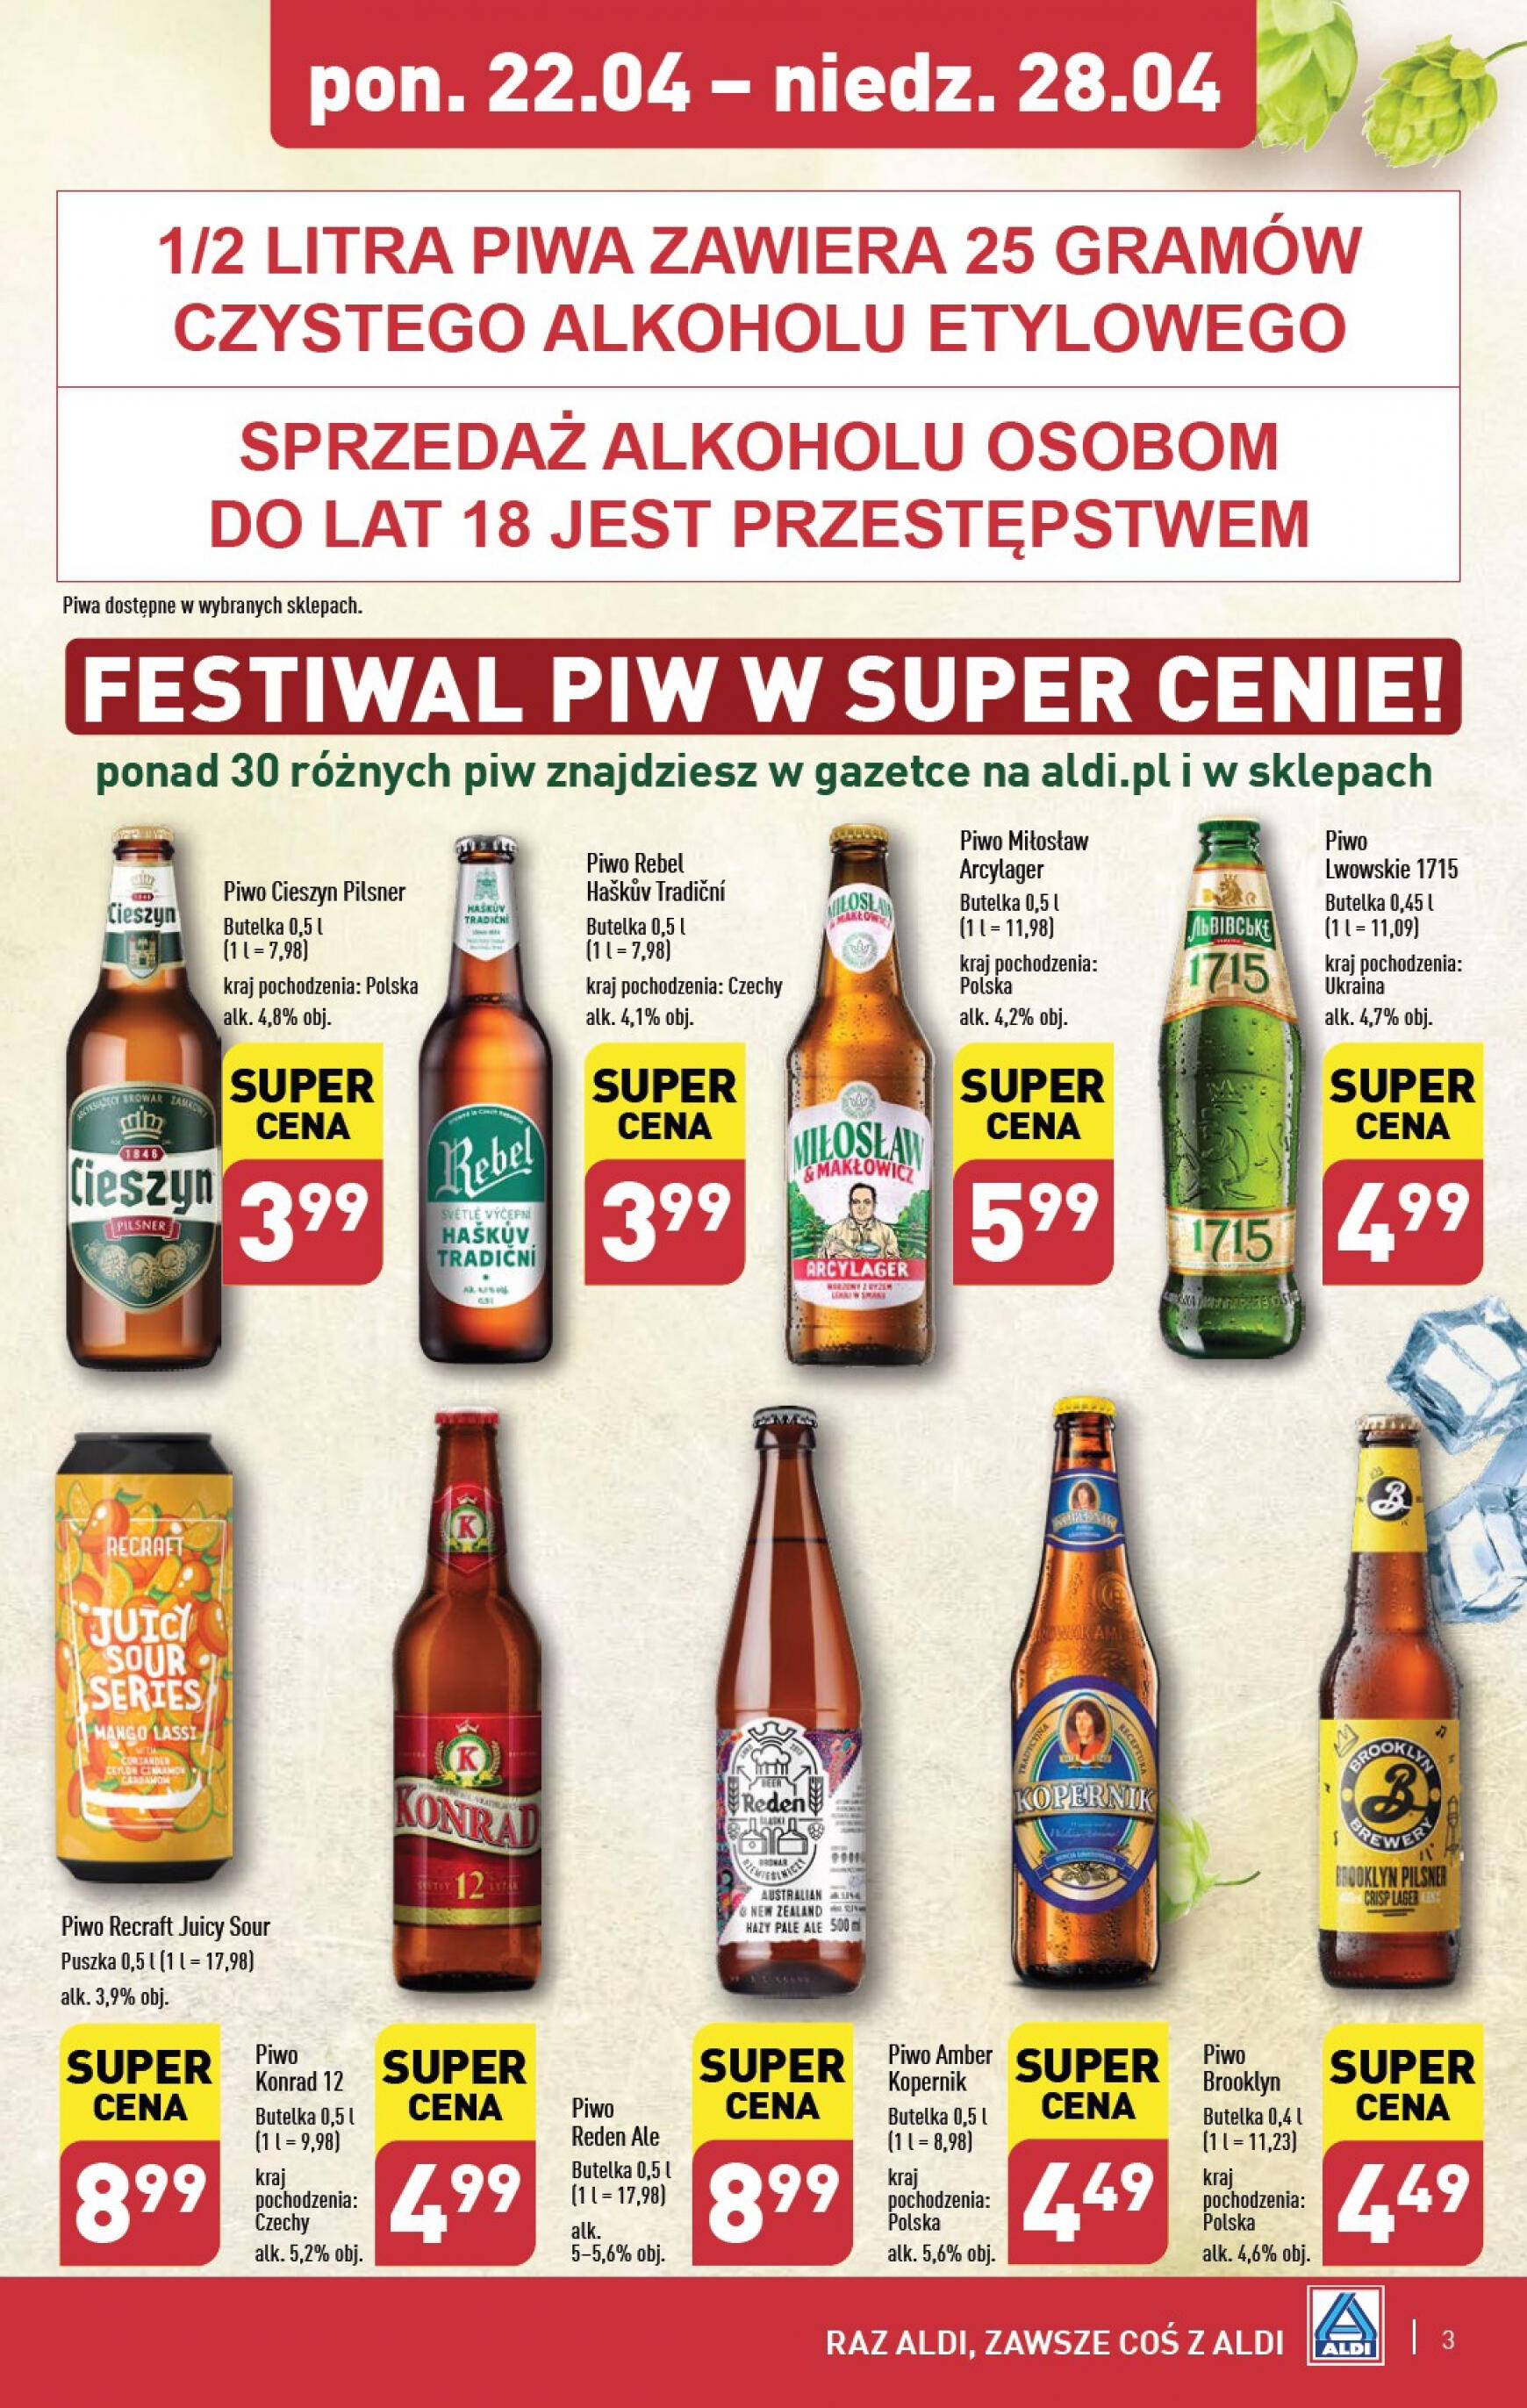 aldi - Aldi - Festiwal piwa w super cenach gazetka aktualna ważna od 22.04. - 28.04. - page: 3